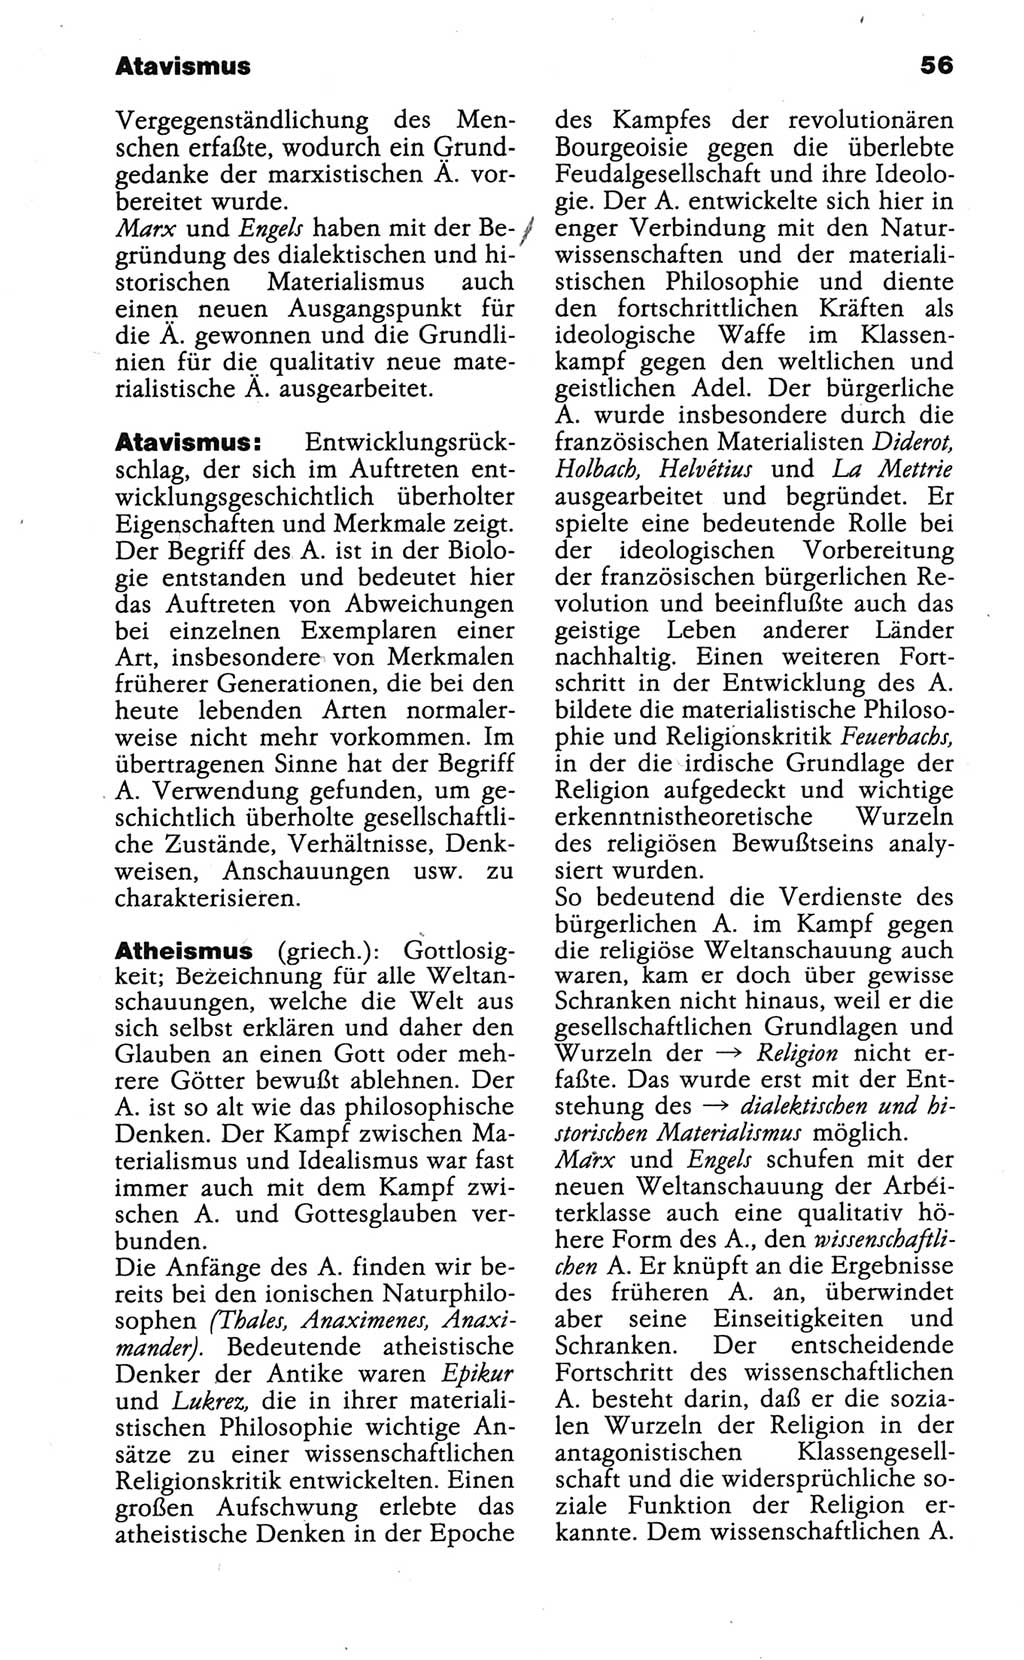 Wörterbuch der marxistisch-leninistischen Philosophie [Deutsche Demokratische Republik (DDR)] 1986, Seite 56 (Wb. ML Phil. DDR 1986, S. 56)